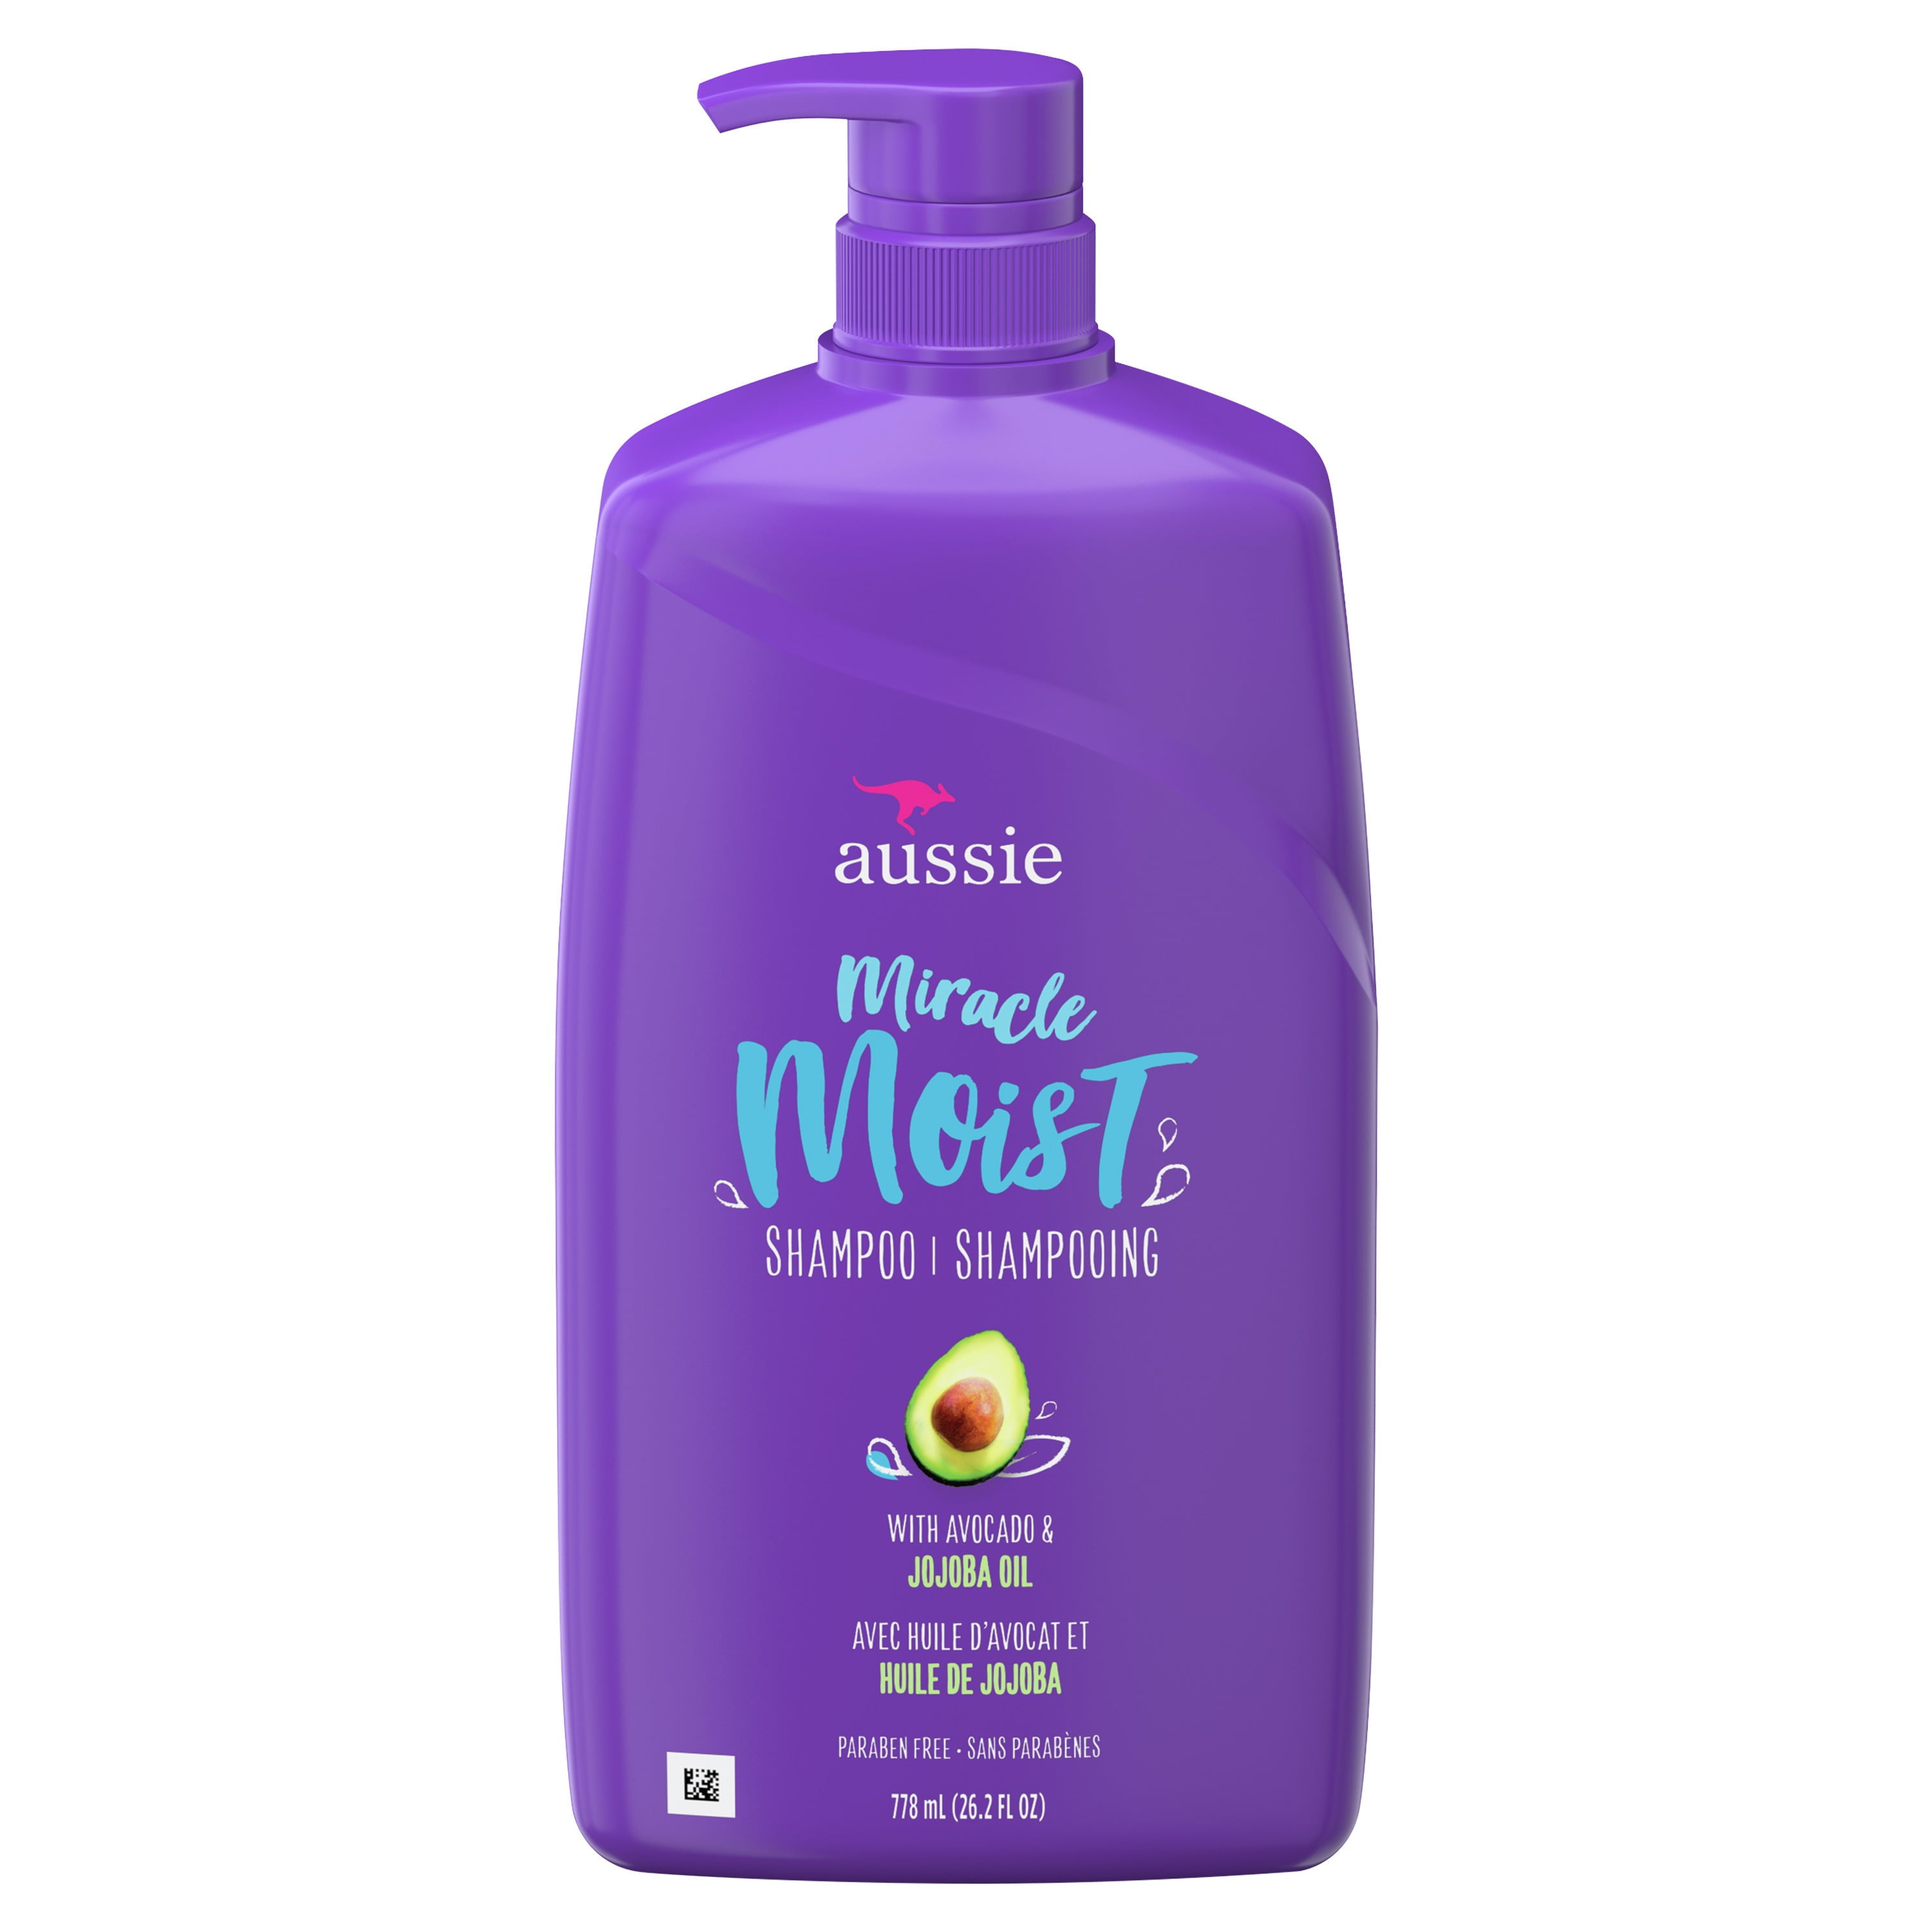 Aussie Miracle Moist Shampoo with Avocado, Paraben Free, 26.2 fl oz